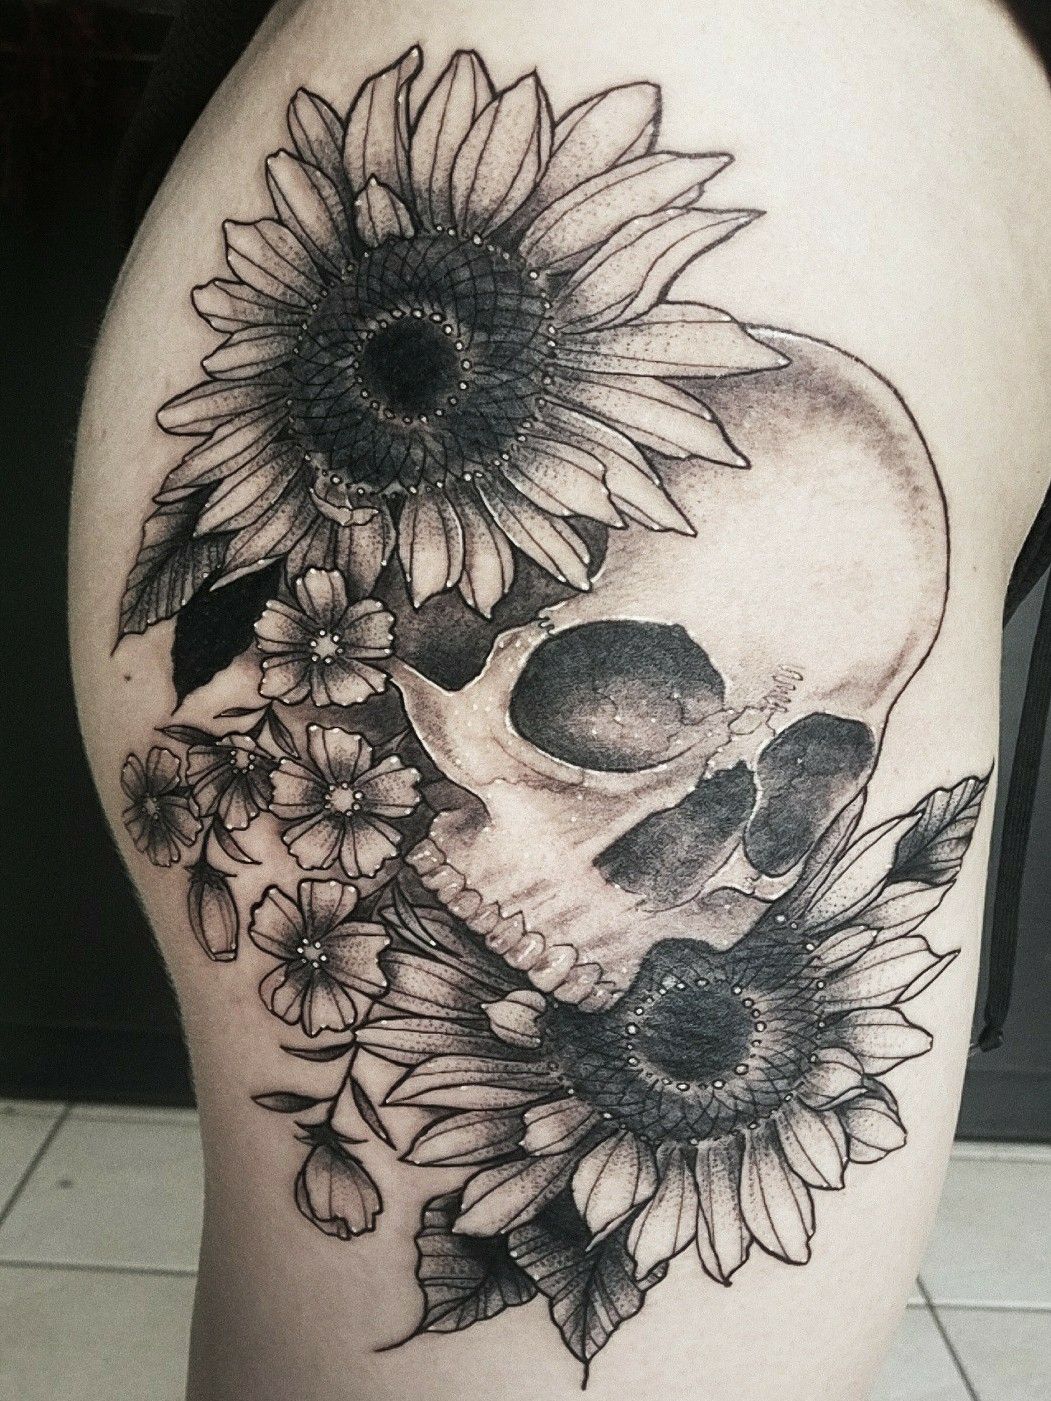 Flower Sunflower Skull Tattoo Stock Vector Royalty Free 1297068232   Shutterstock